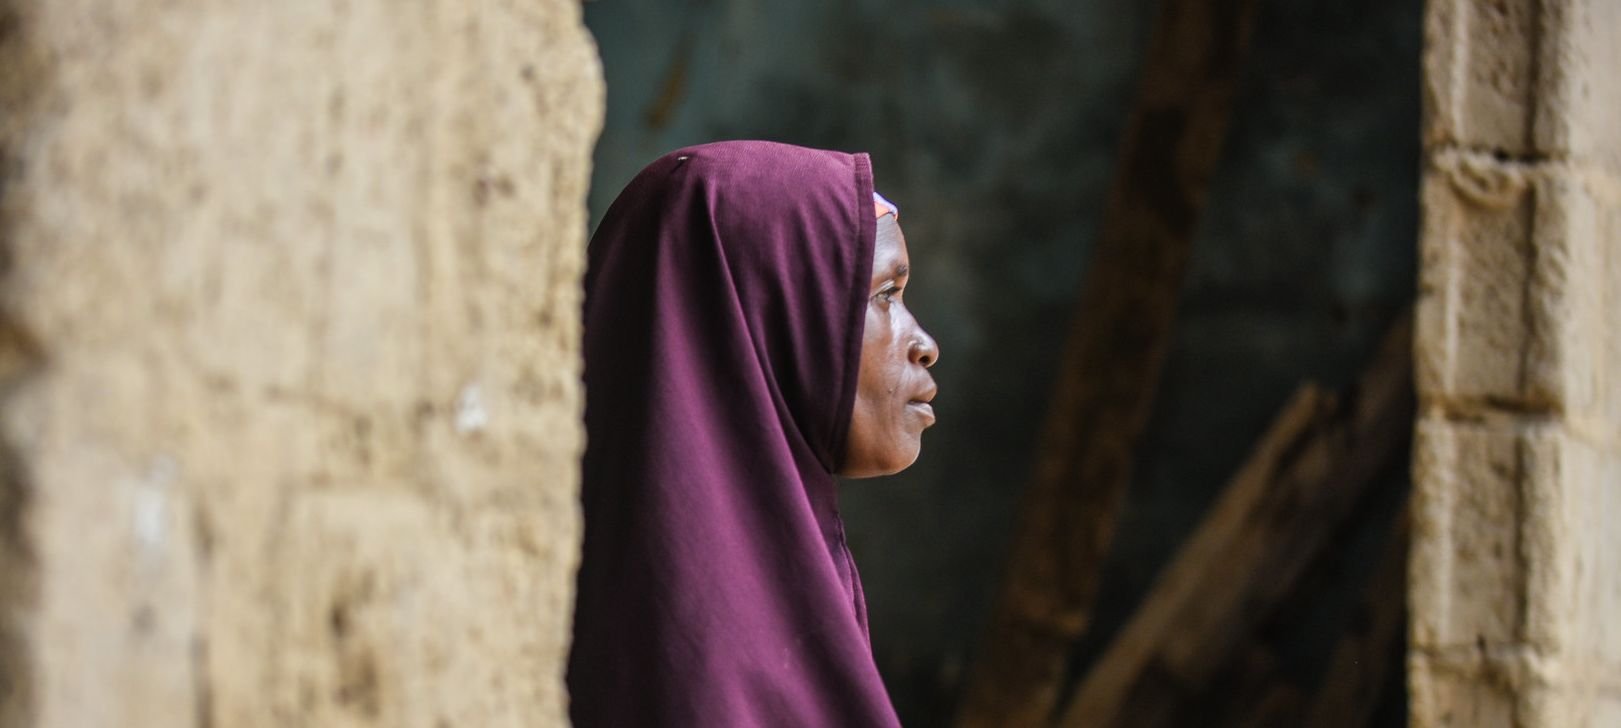 Le nombre de personnes déplacées au Nigeria ne cesse d'augmenter © EU humanitarian aid/Flickr/CC BY-NC-ND 2.0